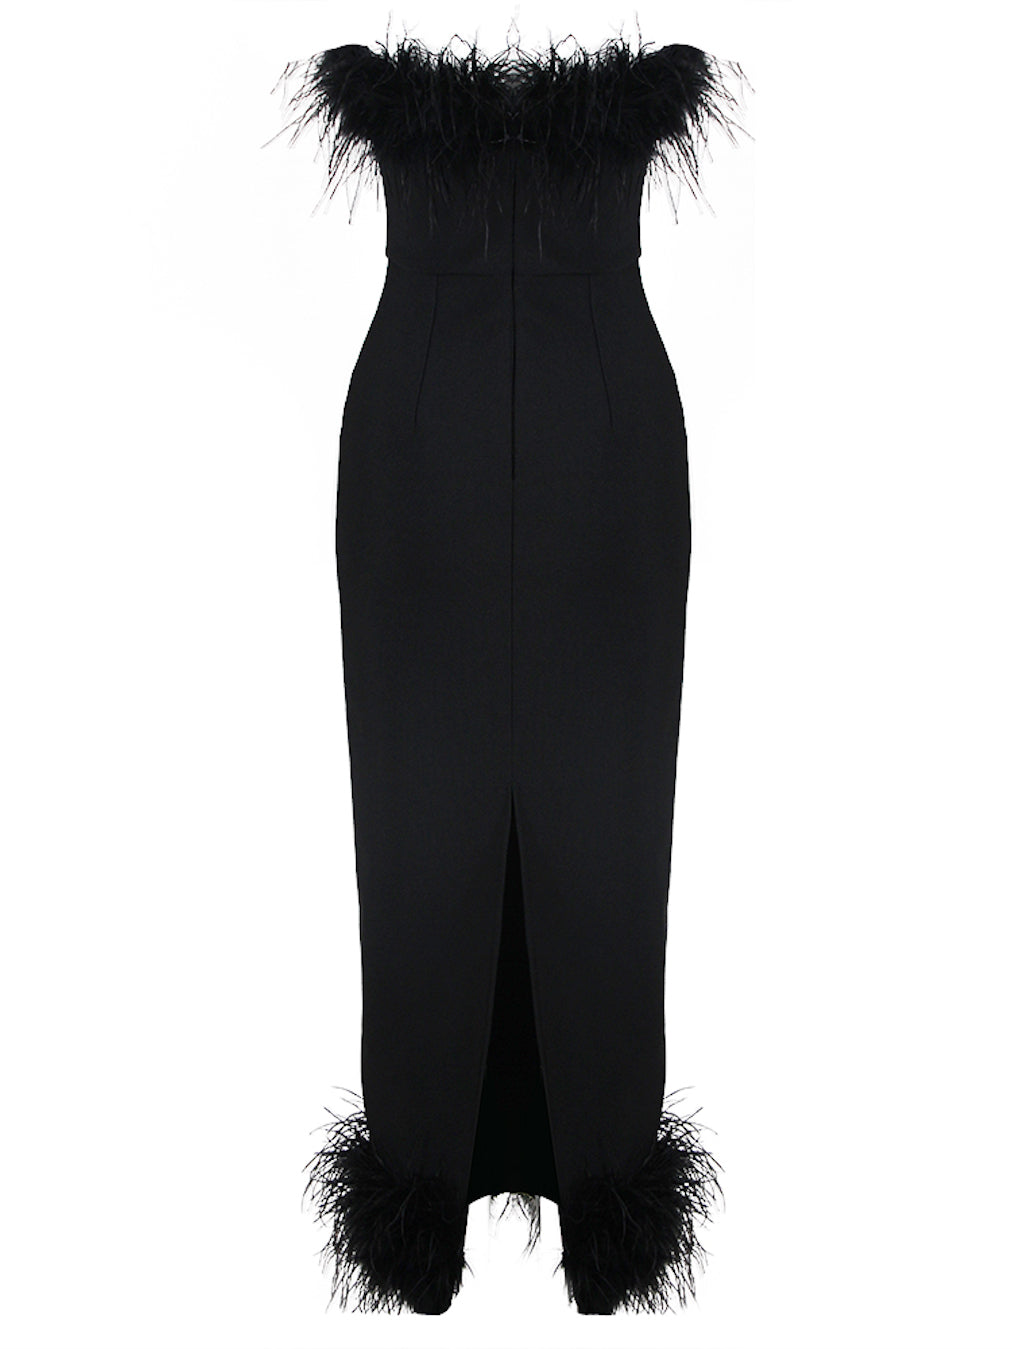 Black Feather Dress Australia | Era Collection